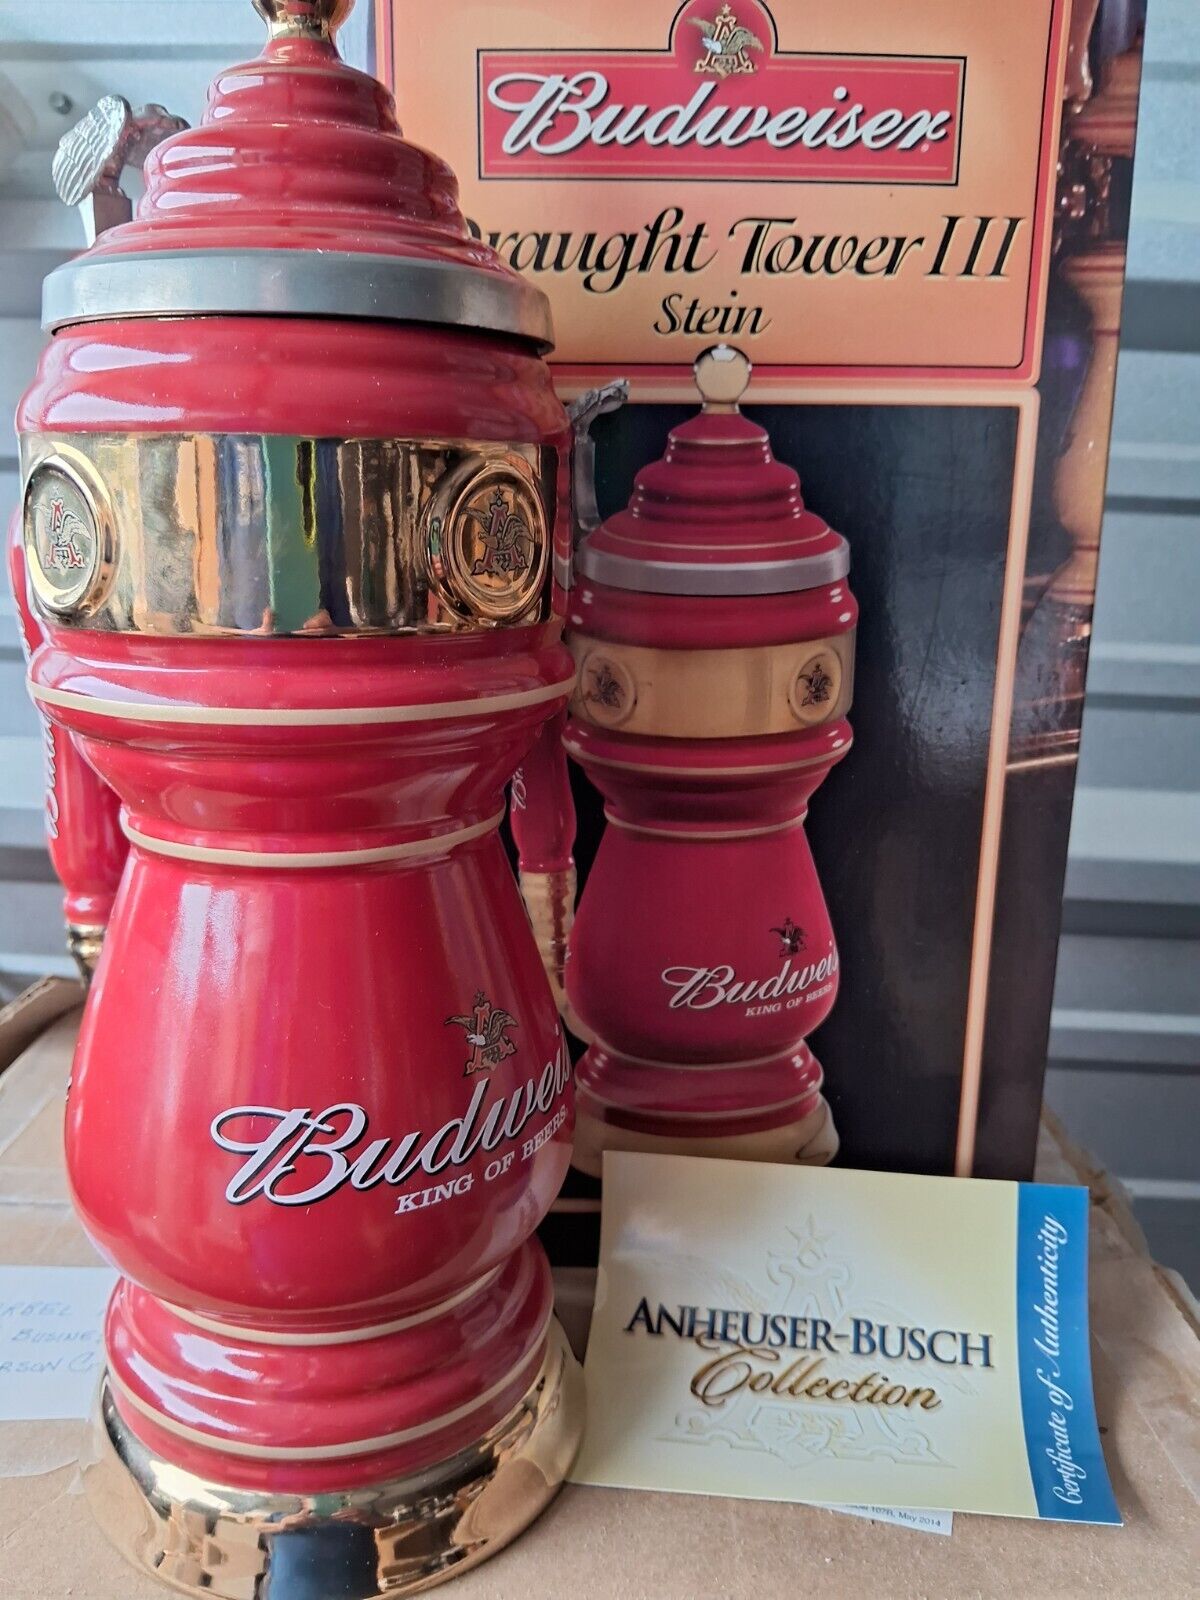 Vintage 2004 Anheuser Busch Draught Tower III Budweiser Beer CS615 Stein box coa